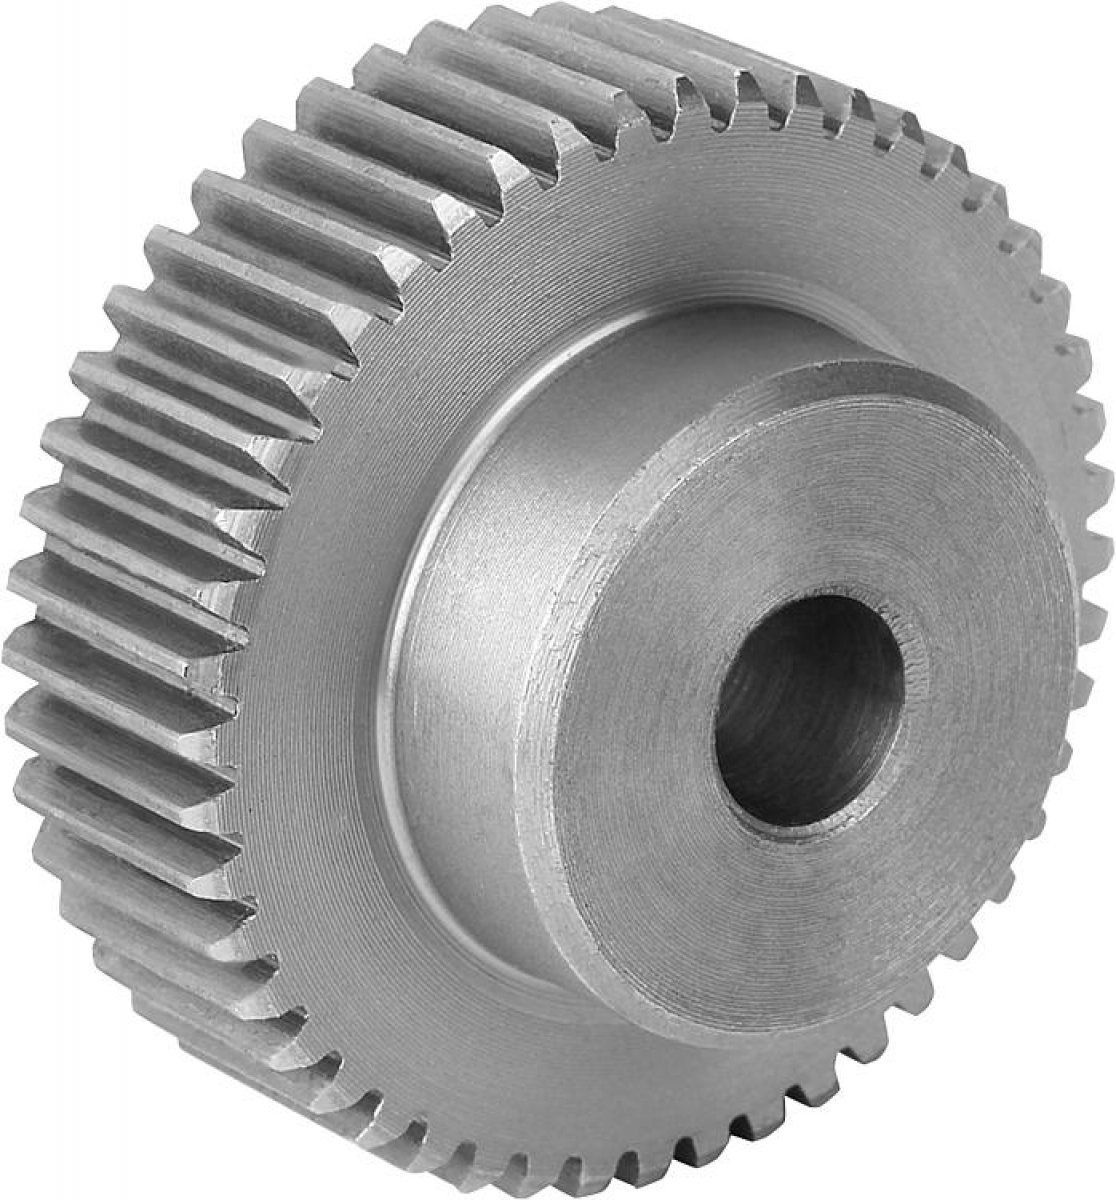 Spur gears in steel